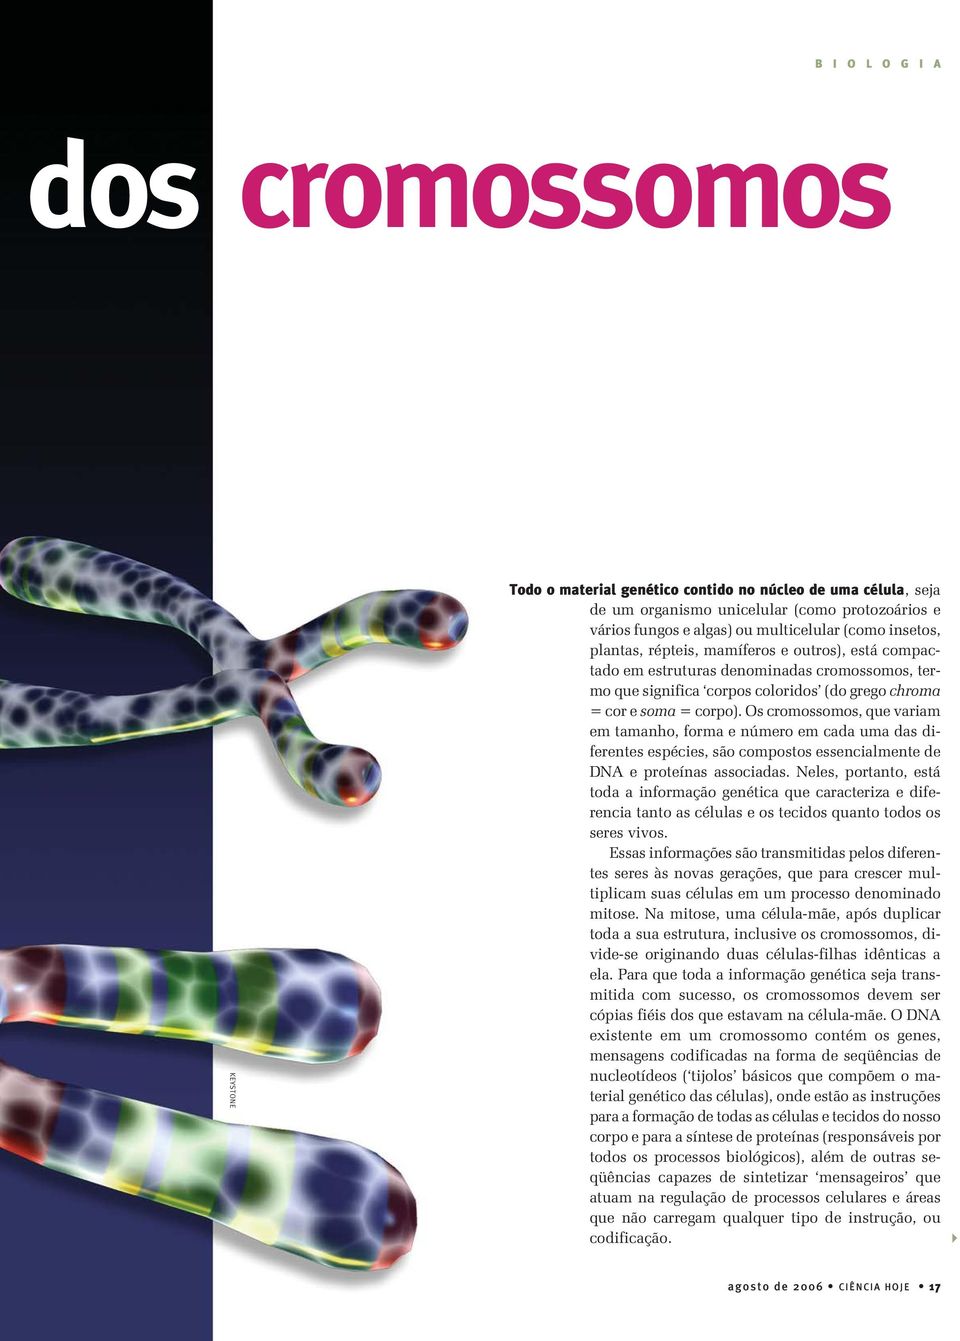 Os cromossomos, que variam em tamanho, forma e número em cada uma das diferentes espécies, são compostos essencialmente de DNA e proteínas associadas.